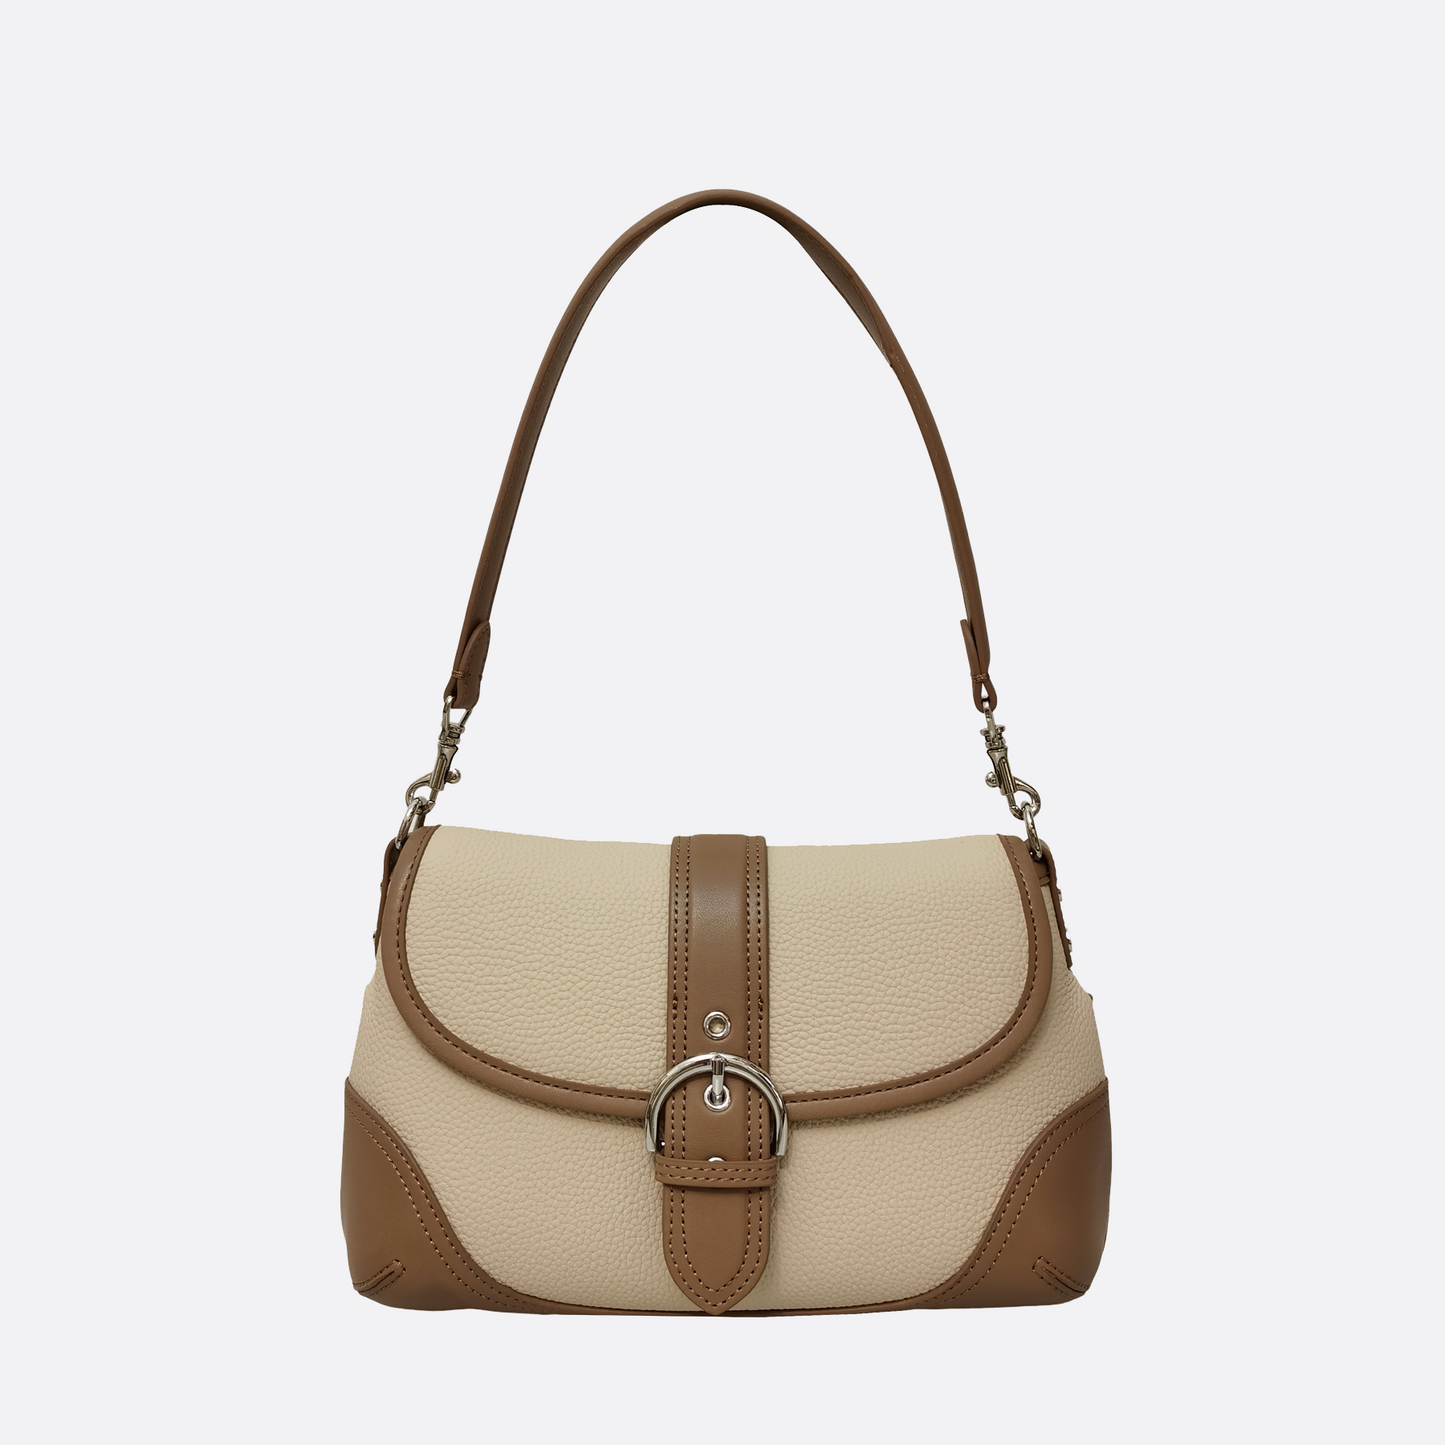 Women's genuine cowhide leather handbag Sternite V3 design